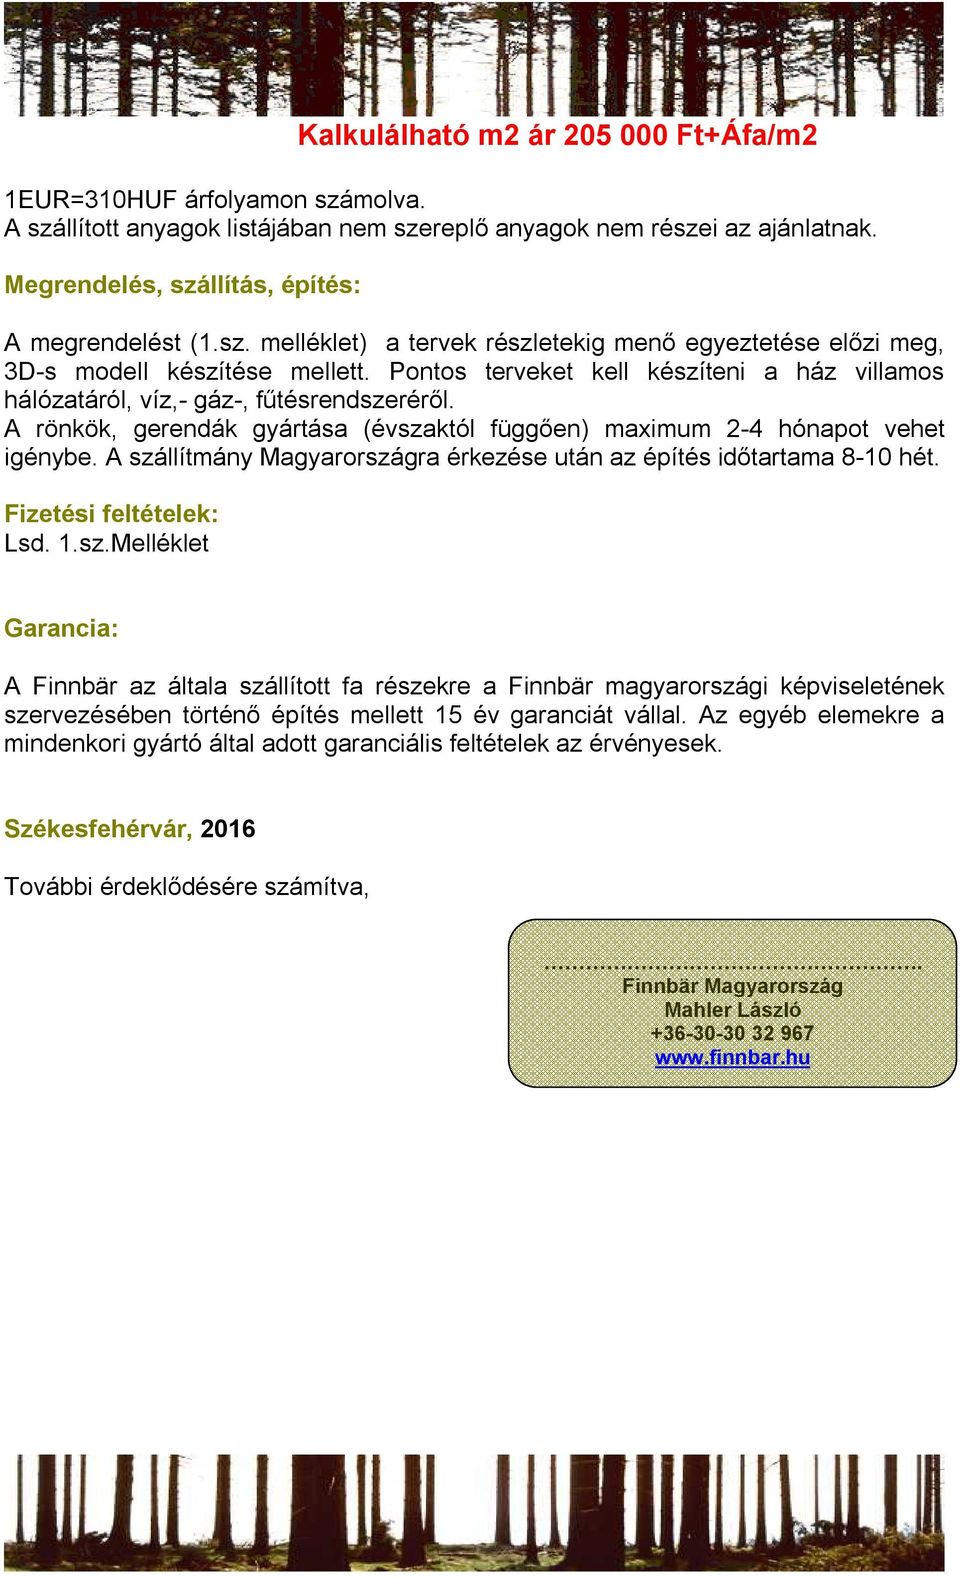 A rönkök, gerendák gyártása (évszaktól függően) maximum 2-4 hónapot vehet igénybe. A szállítmány Magyarországra érkezése után az építés időtartama 8-10 hét. Fizetési feltételek: Lsd. 1.sz.Melléklet Garancia: A Finnbär az általa szállított fa részekre a Finnbär magyarországi képviseletének szervezésében történő építés mellett 15 év garanciát vállal.